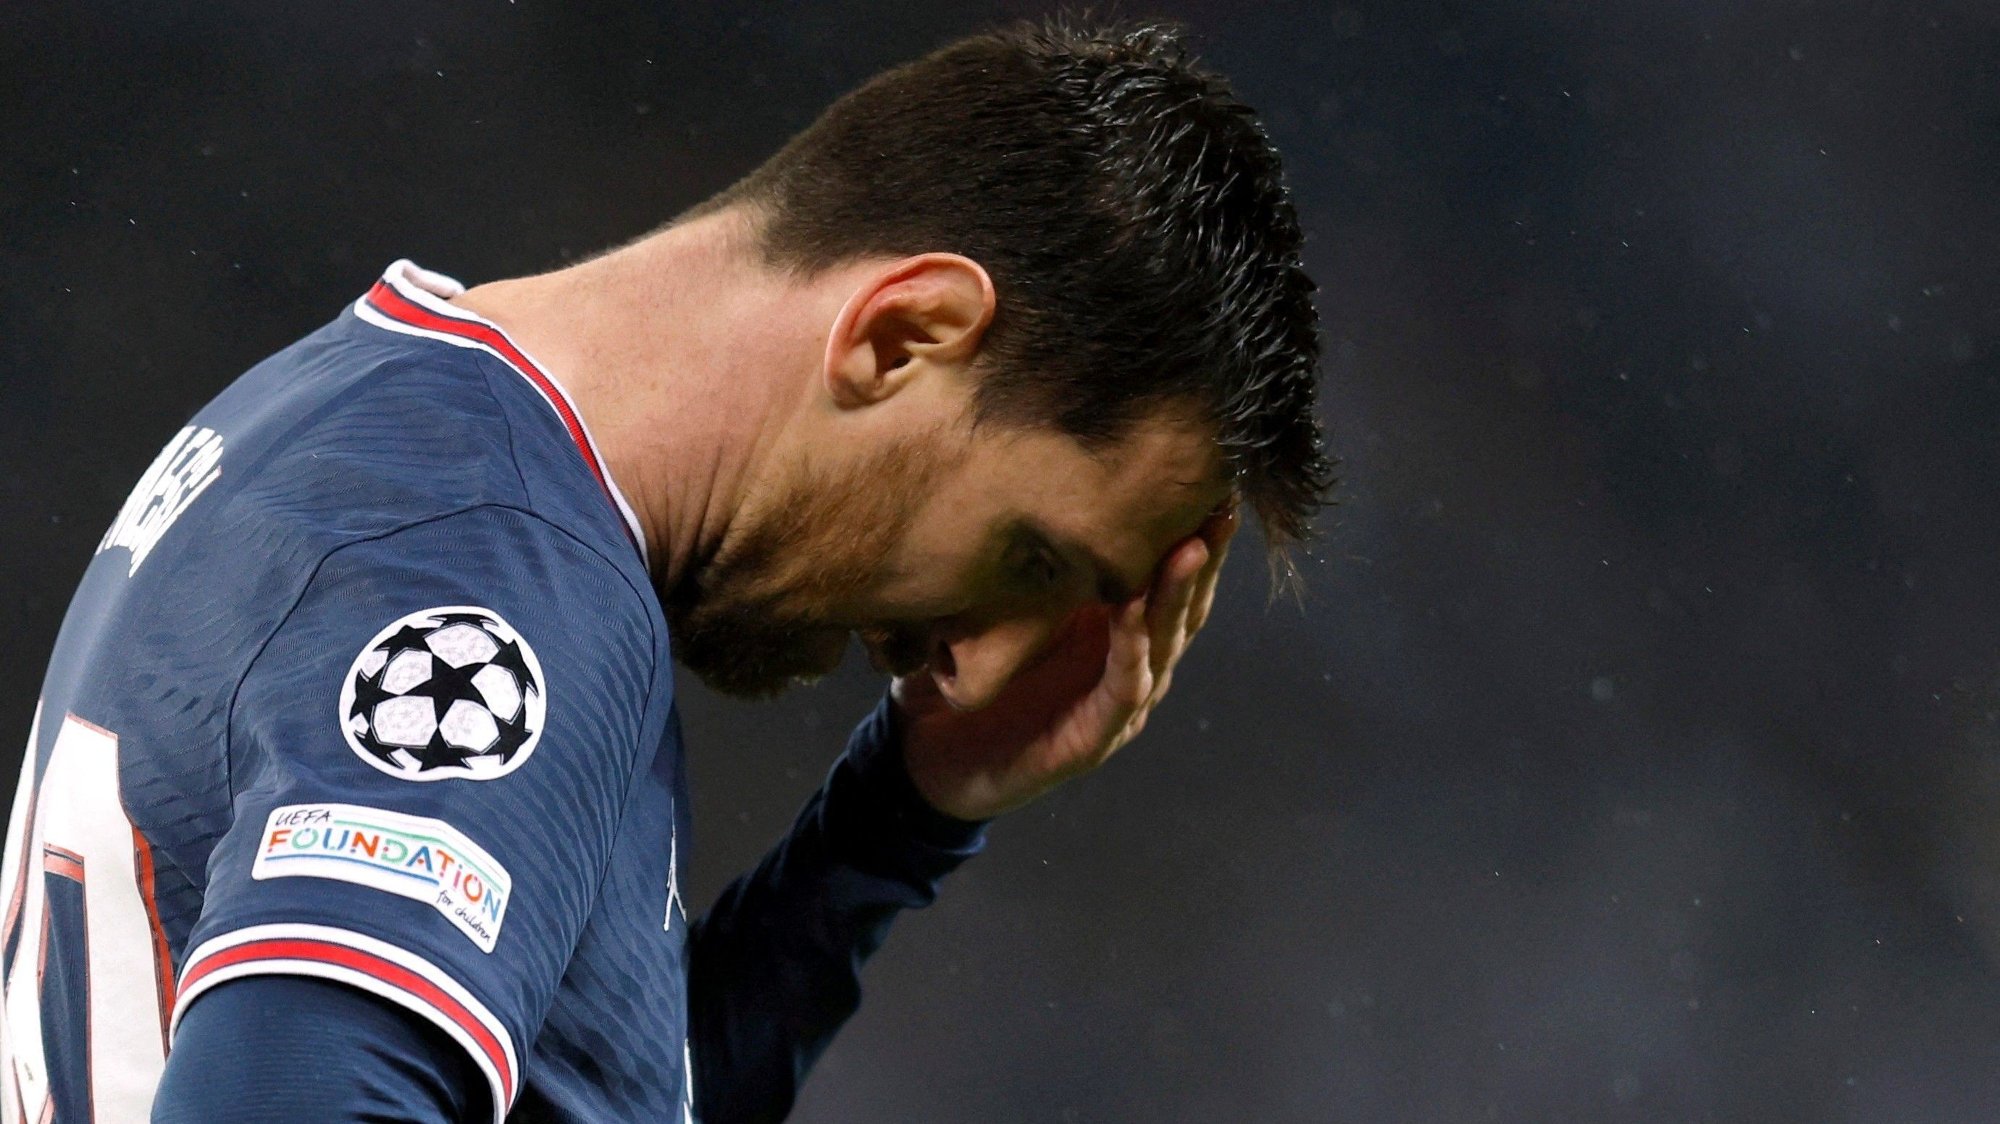 Ligue 1, Paris Saint-Germain |  The arc against Messi creates reactions: